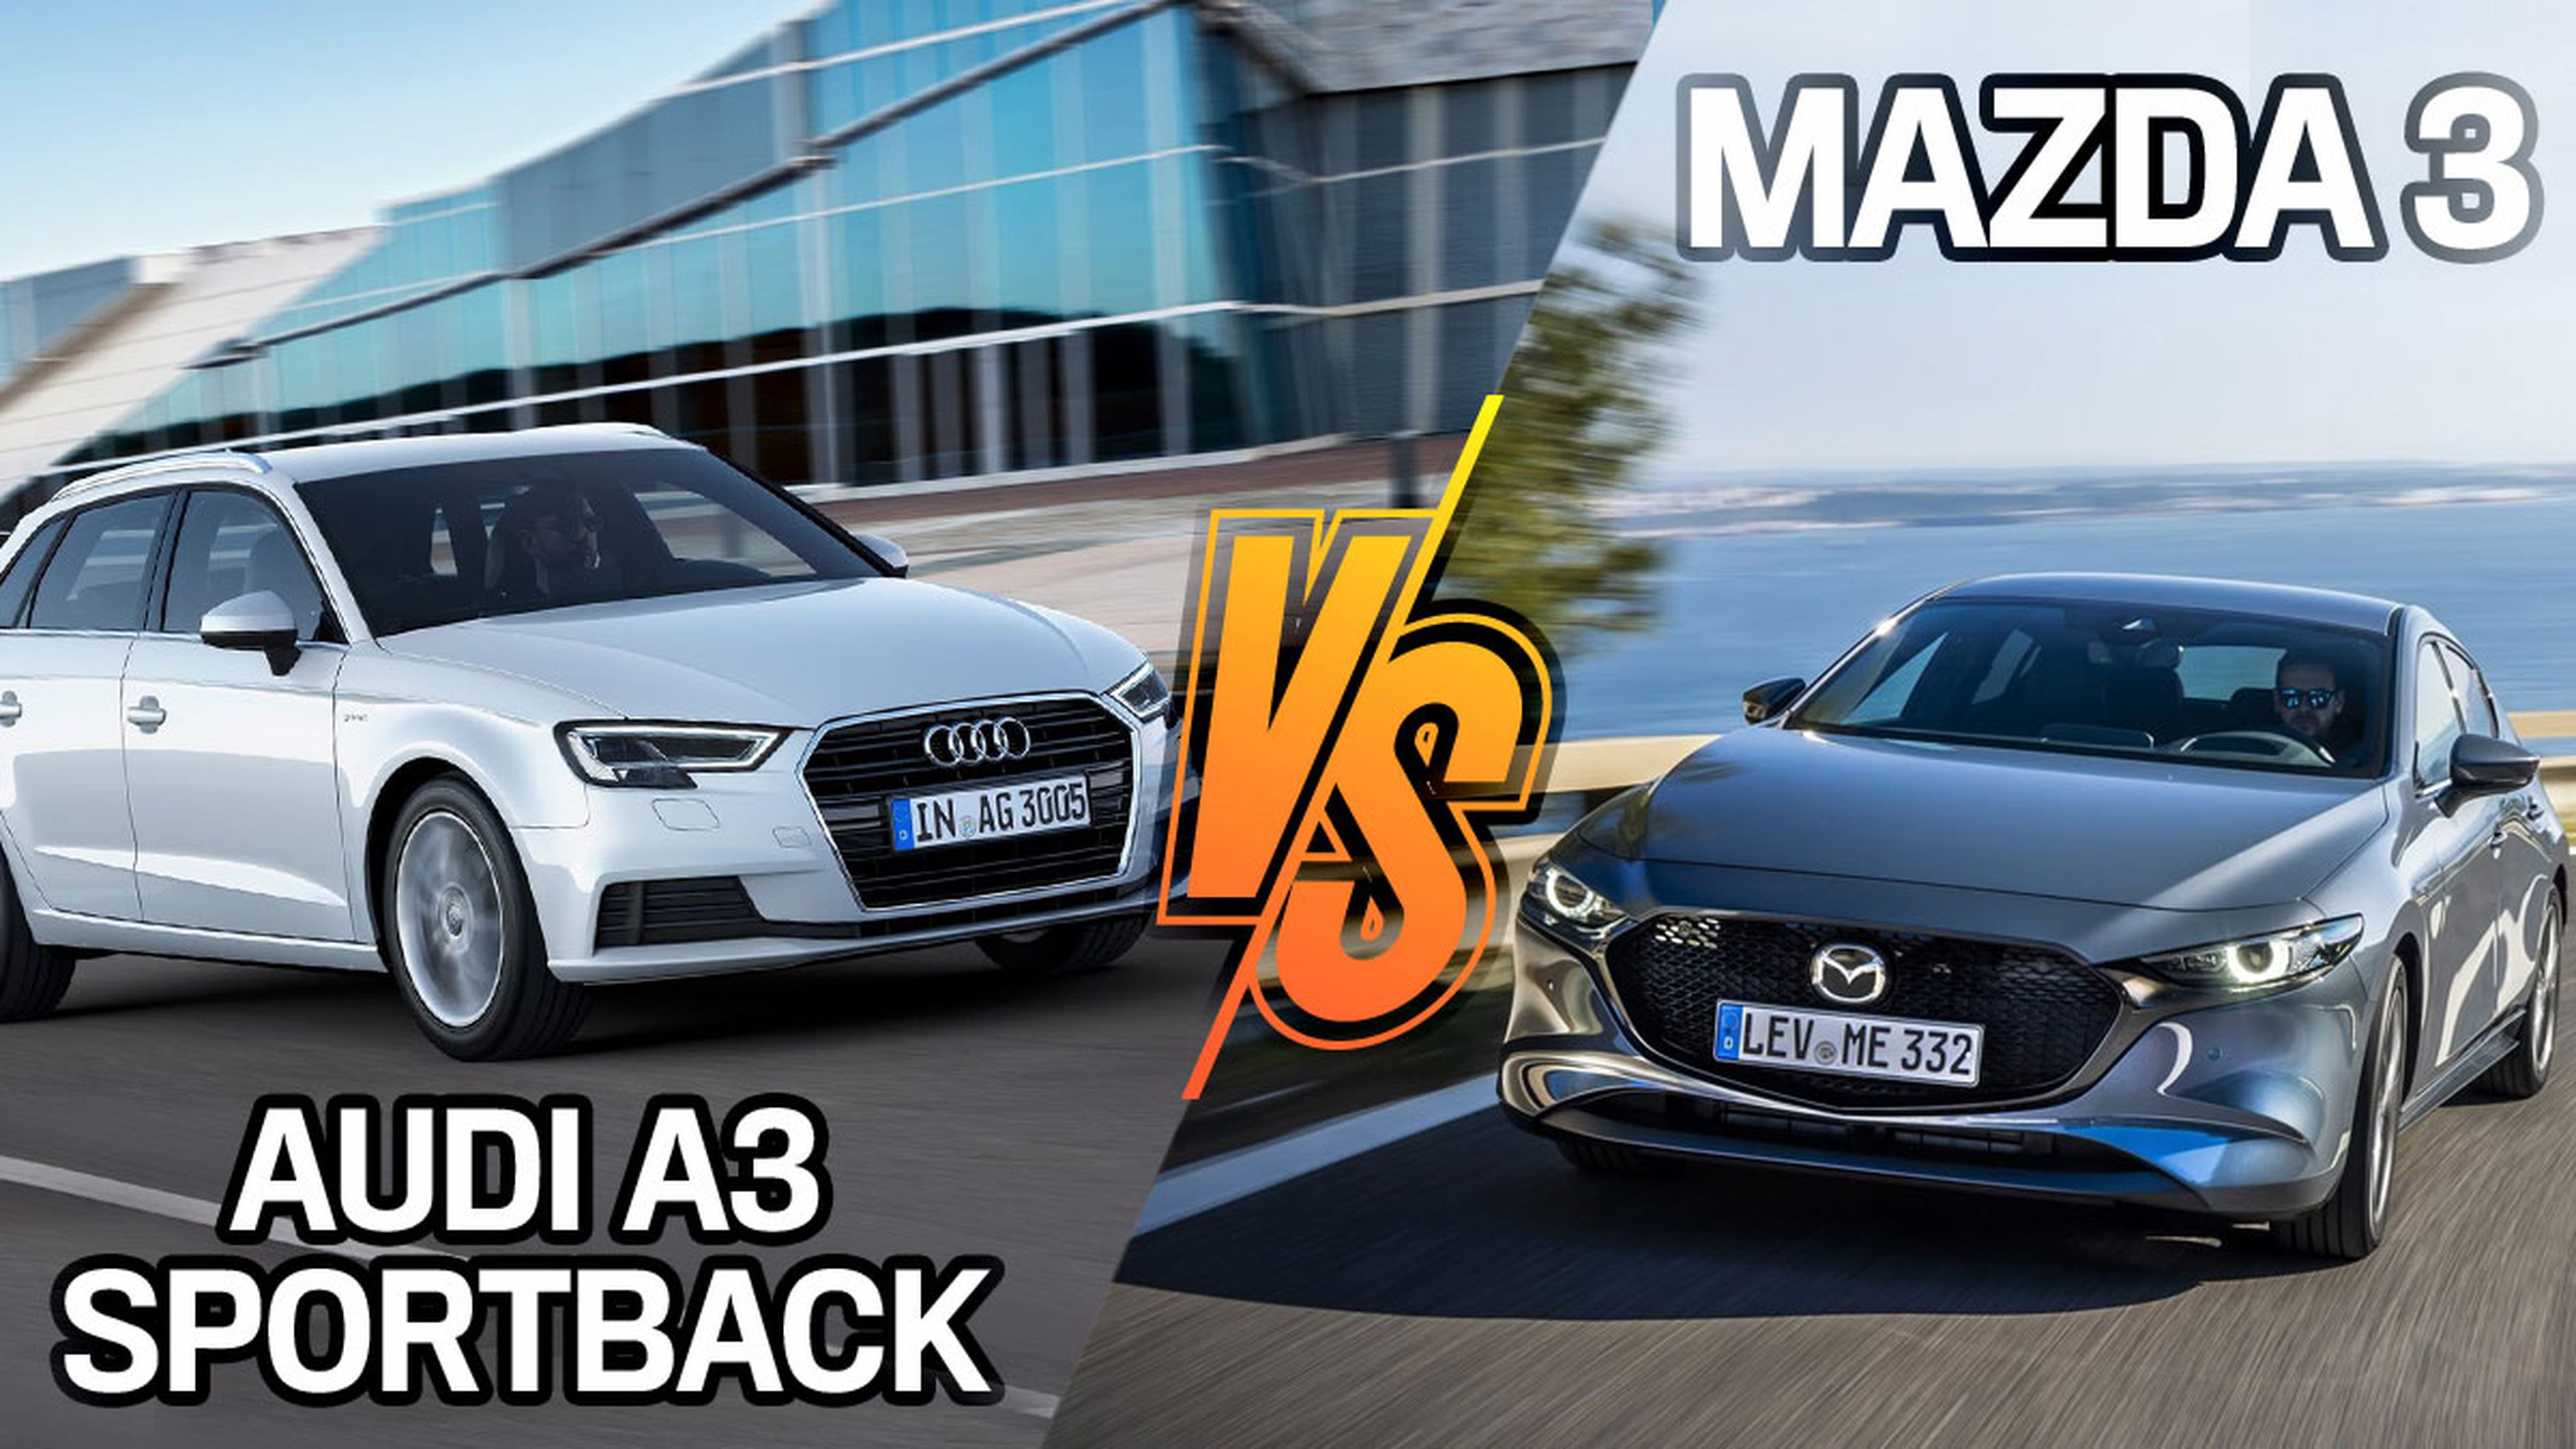 Audi A3 Sportback vs Mazda3